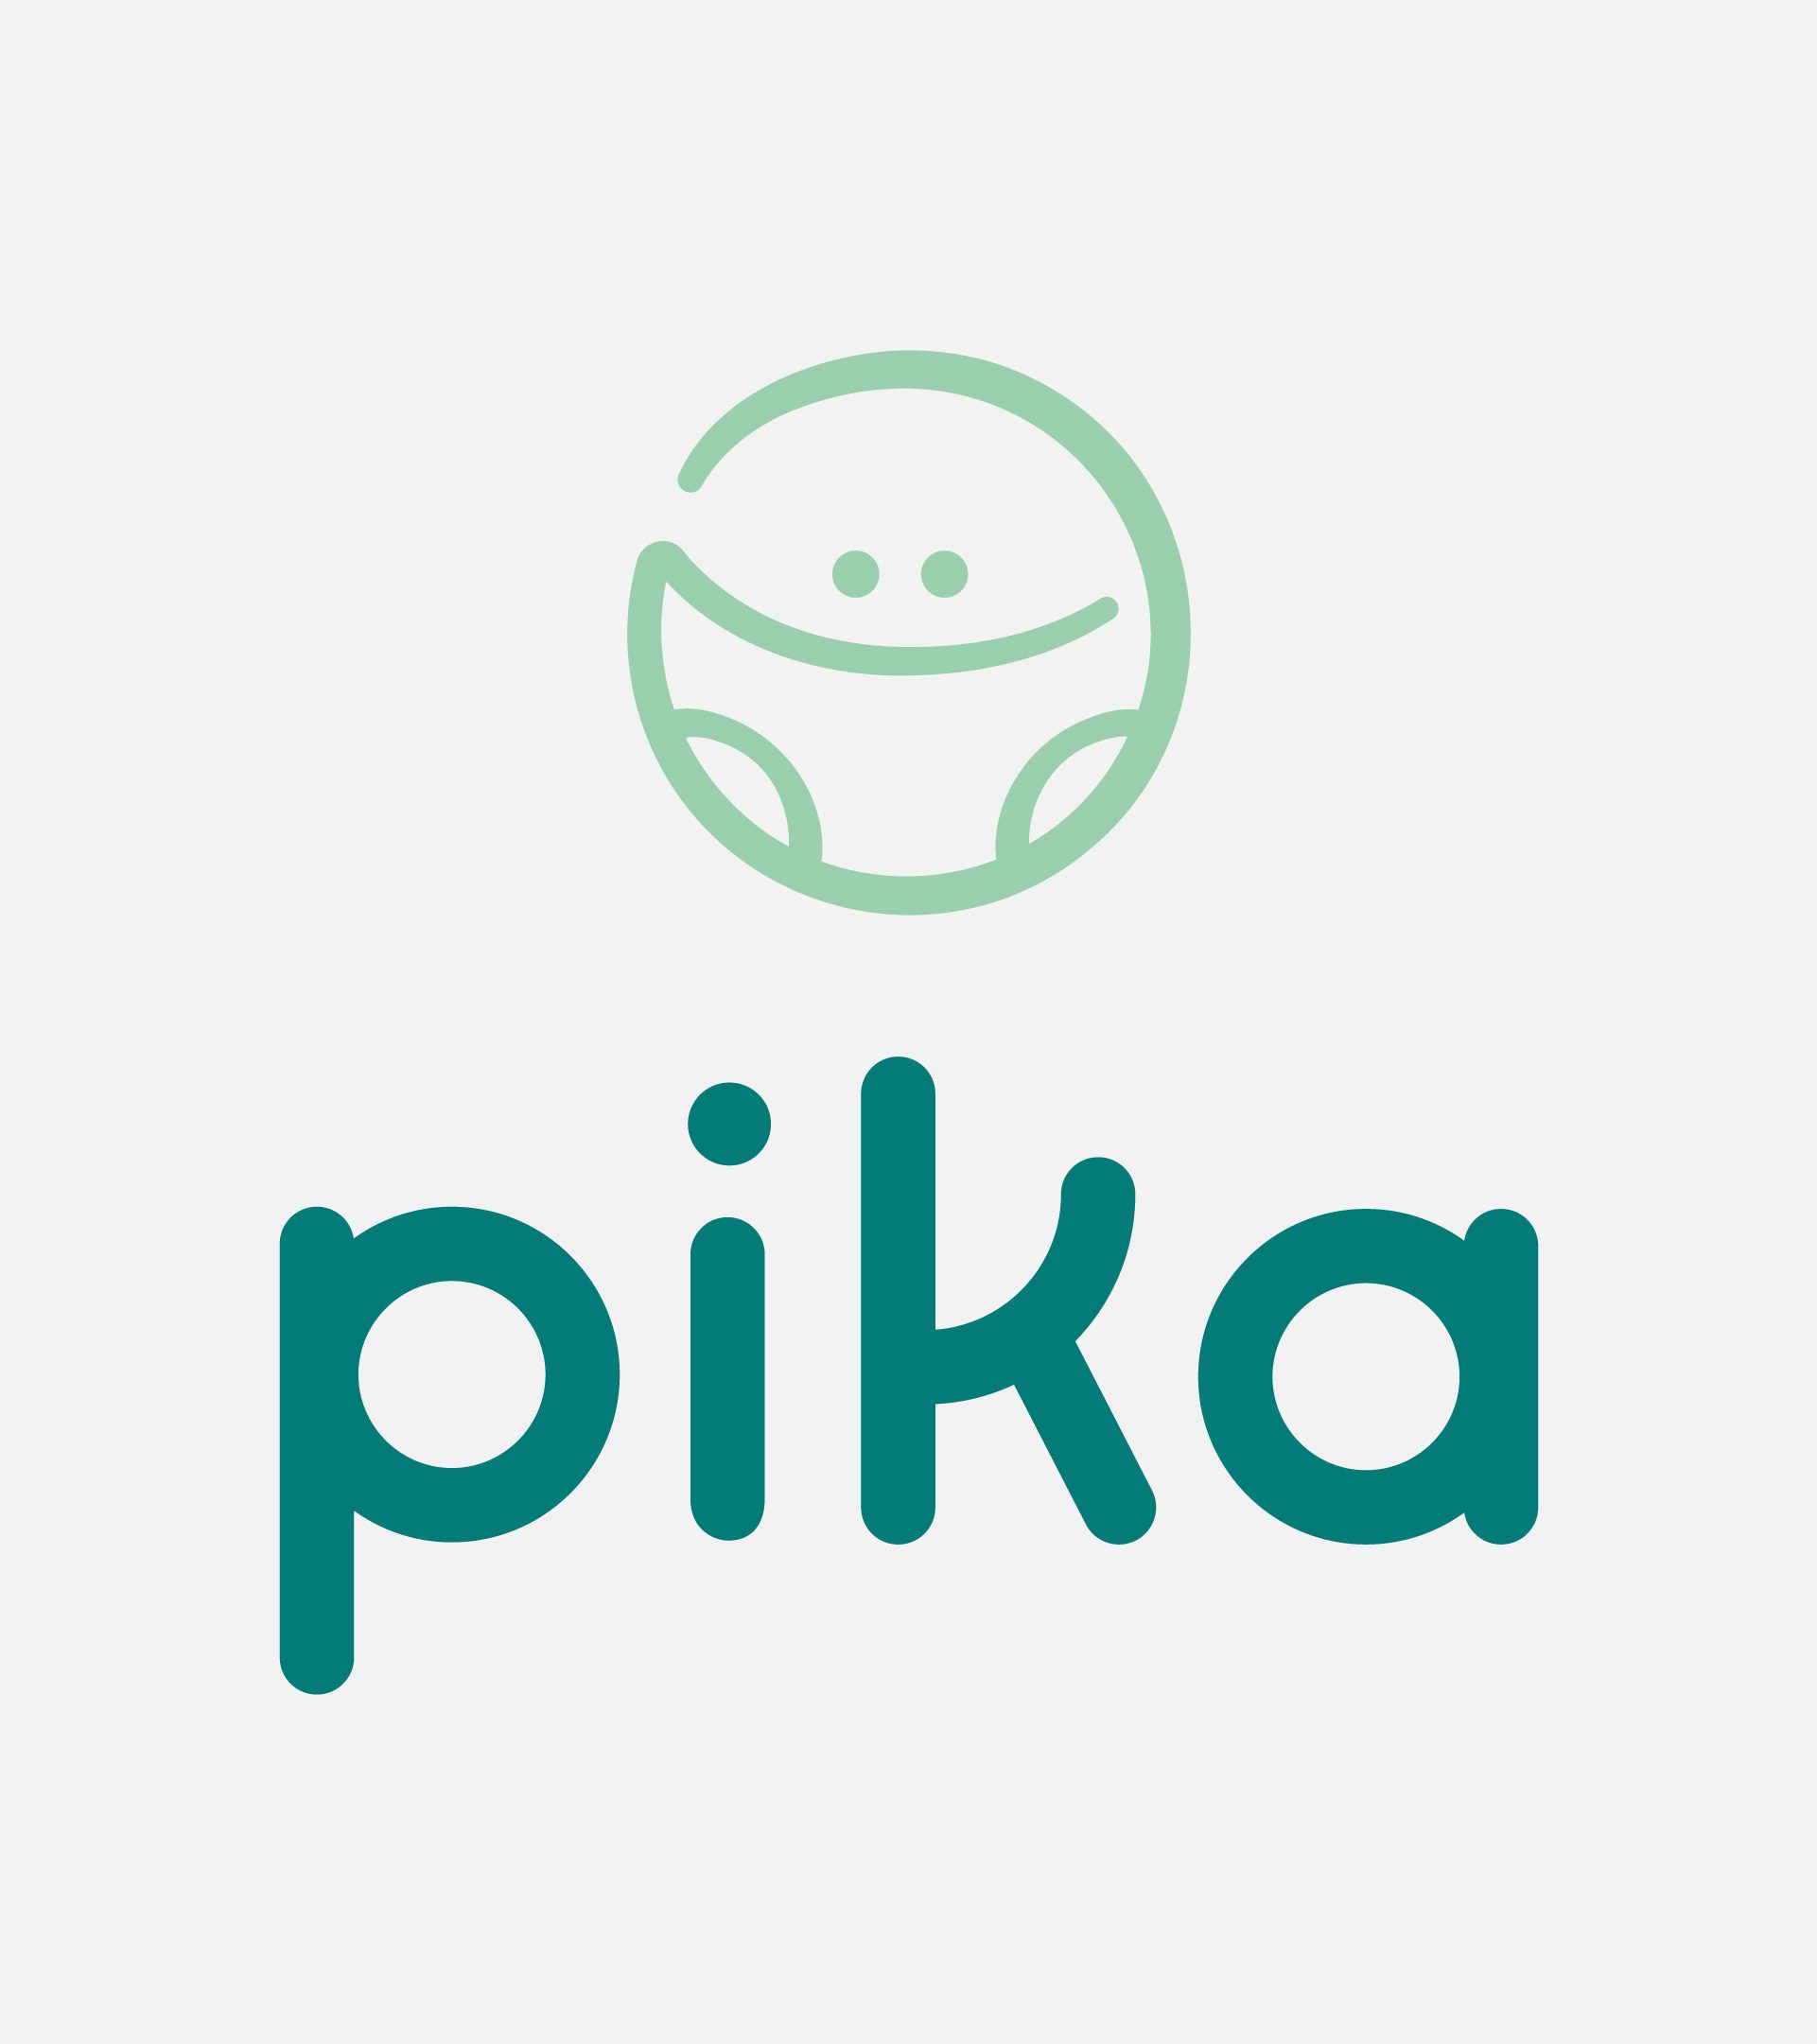 Pika Logo